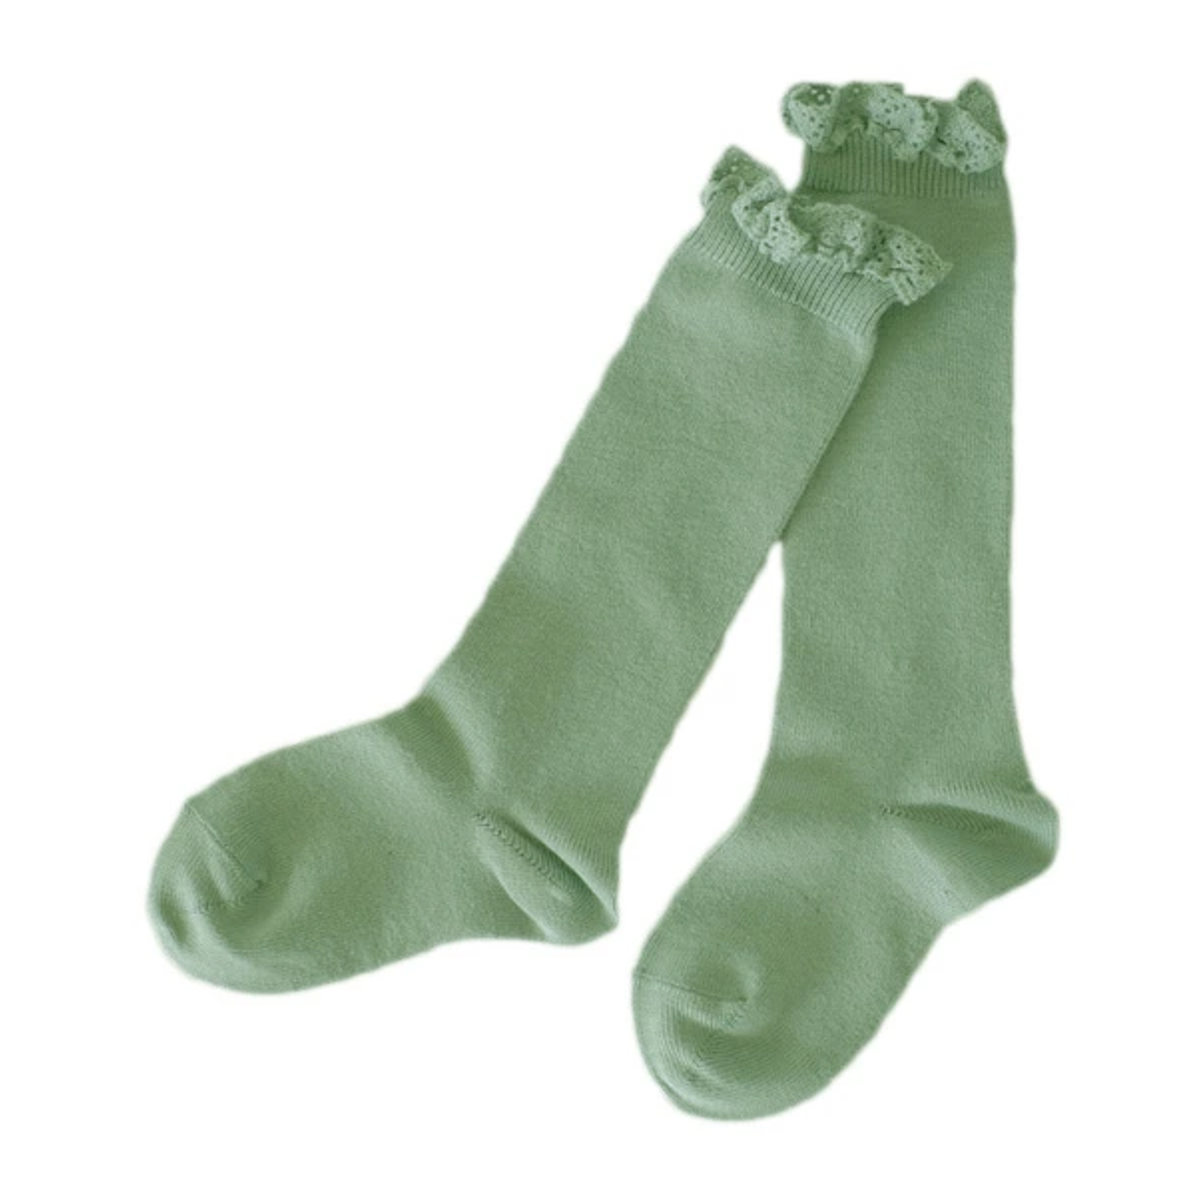 靴下 condor 子供用 3〜4歳 Knee socks with lace edging cuf...